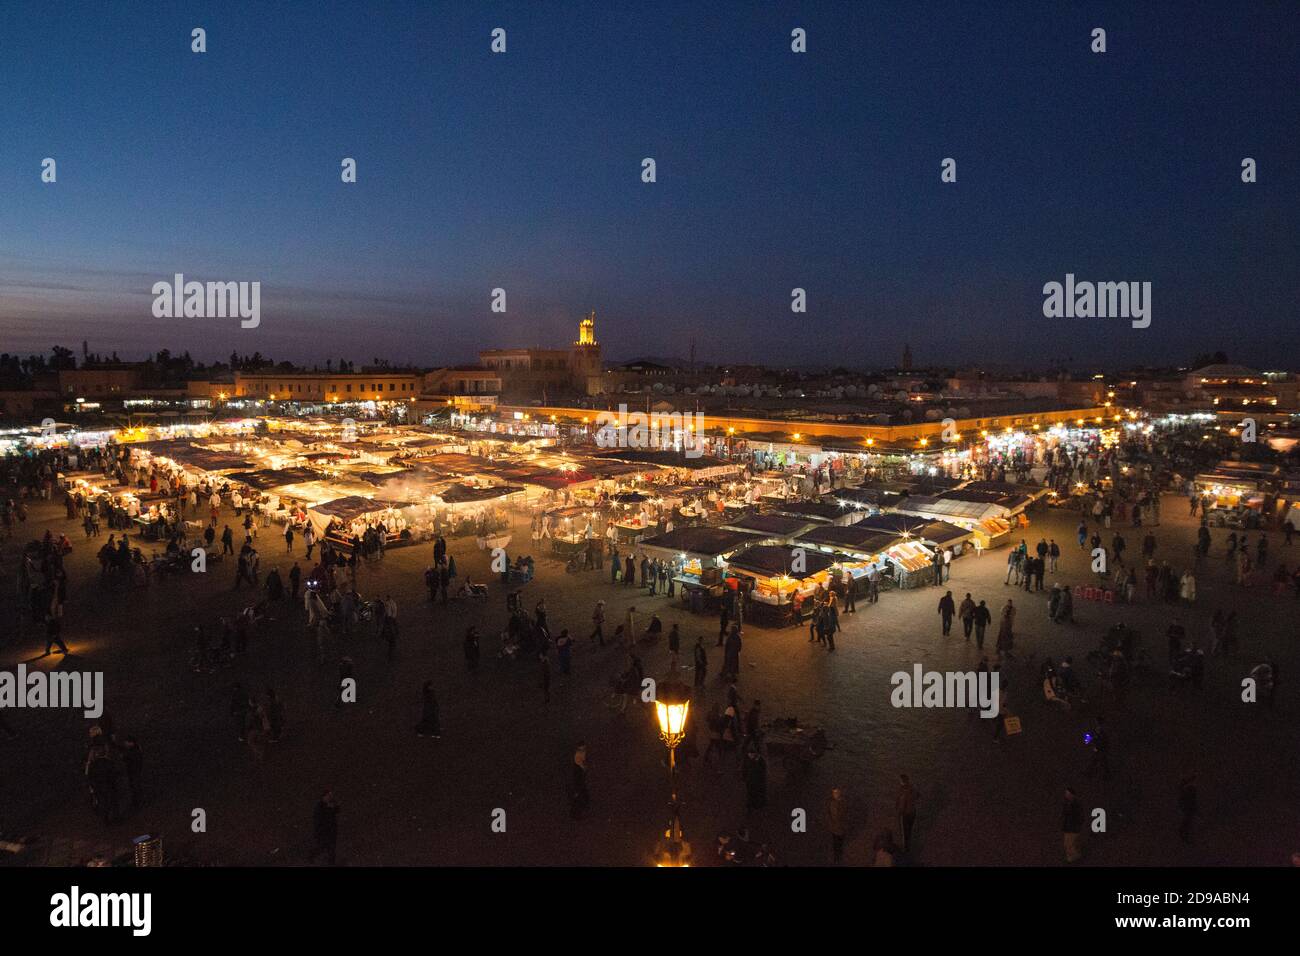 Bancarelle di cibo a Jemaa el Fna, la piazza del mercato di Marrakech, Marocco. Foto Stock